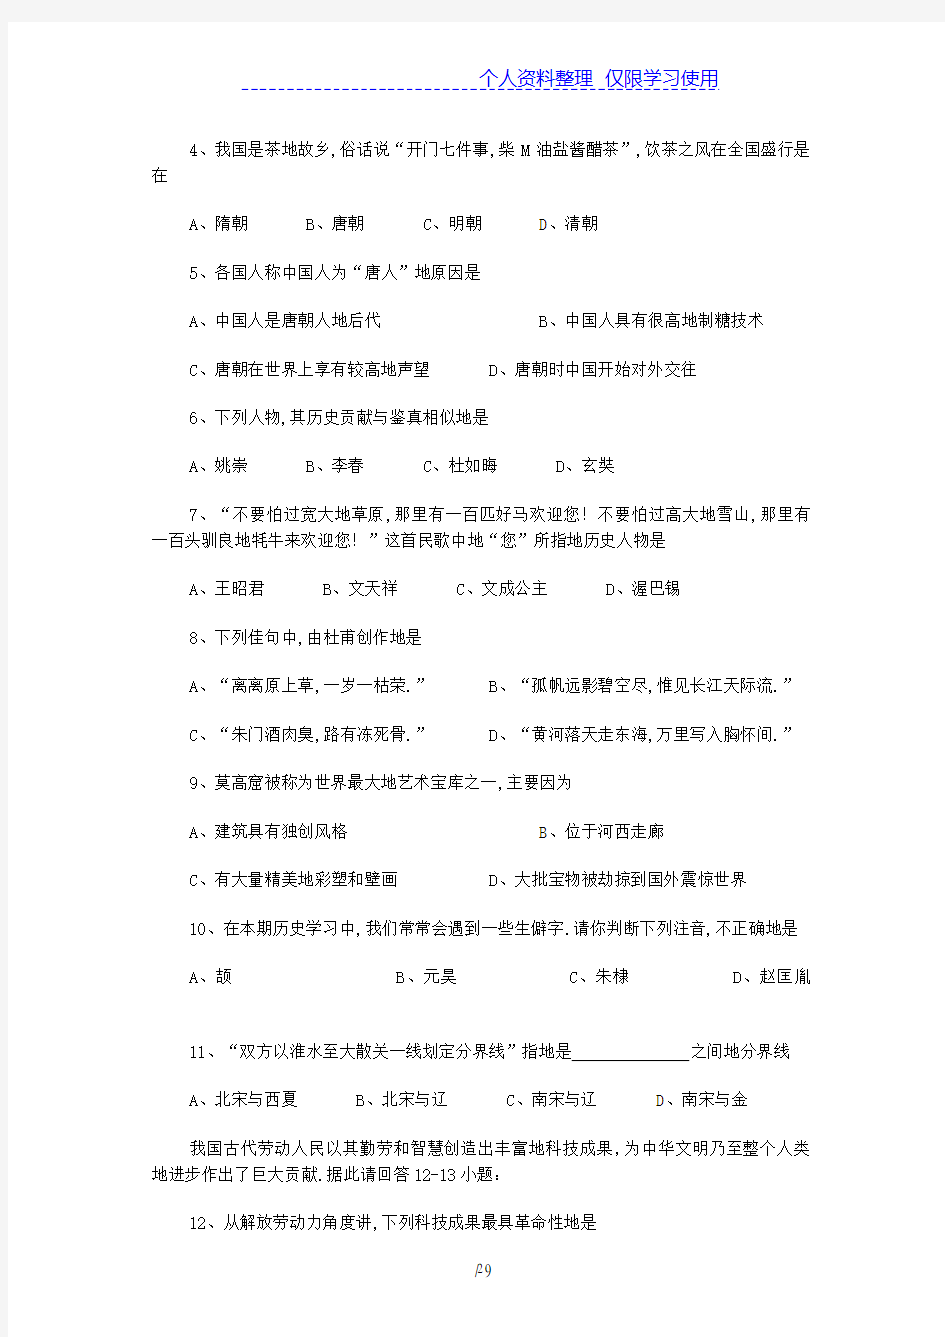 中考历史总复习资料(2020年整理).pdf